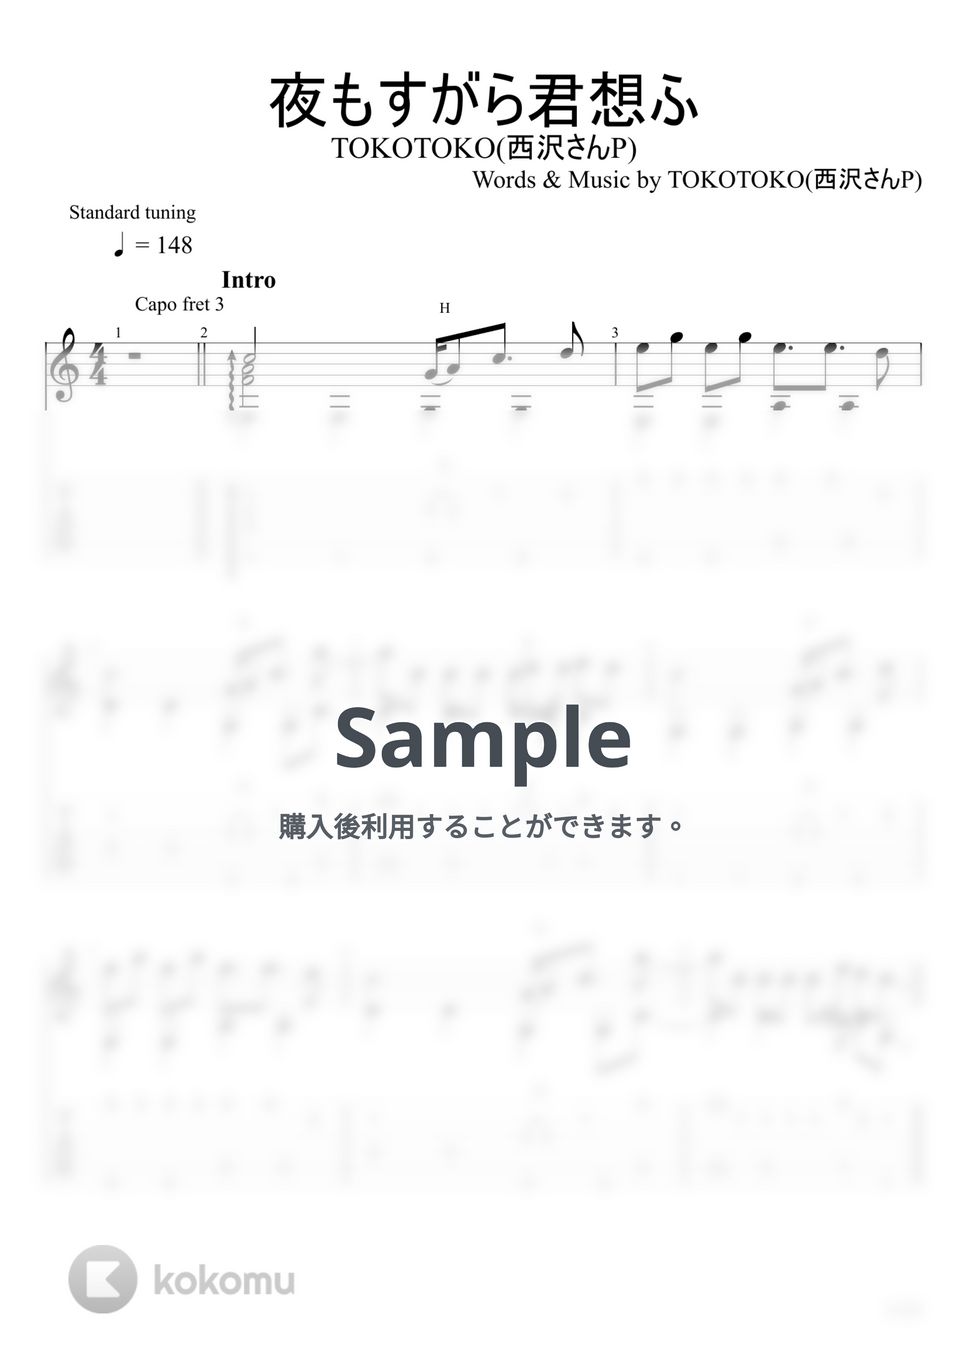 TOKOTOKO(西沢さんP) - 夜もすがら君想ふ (ソロギター) by u3danchou